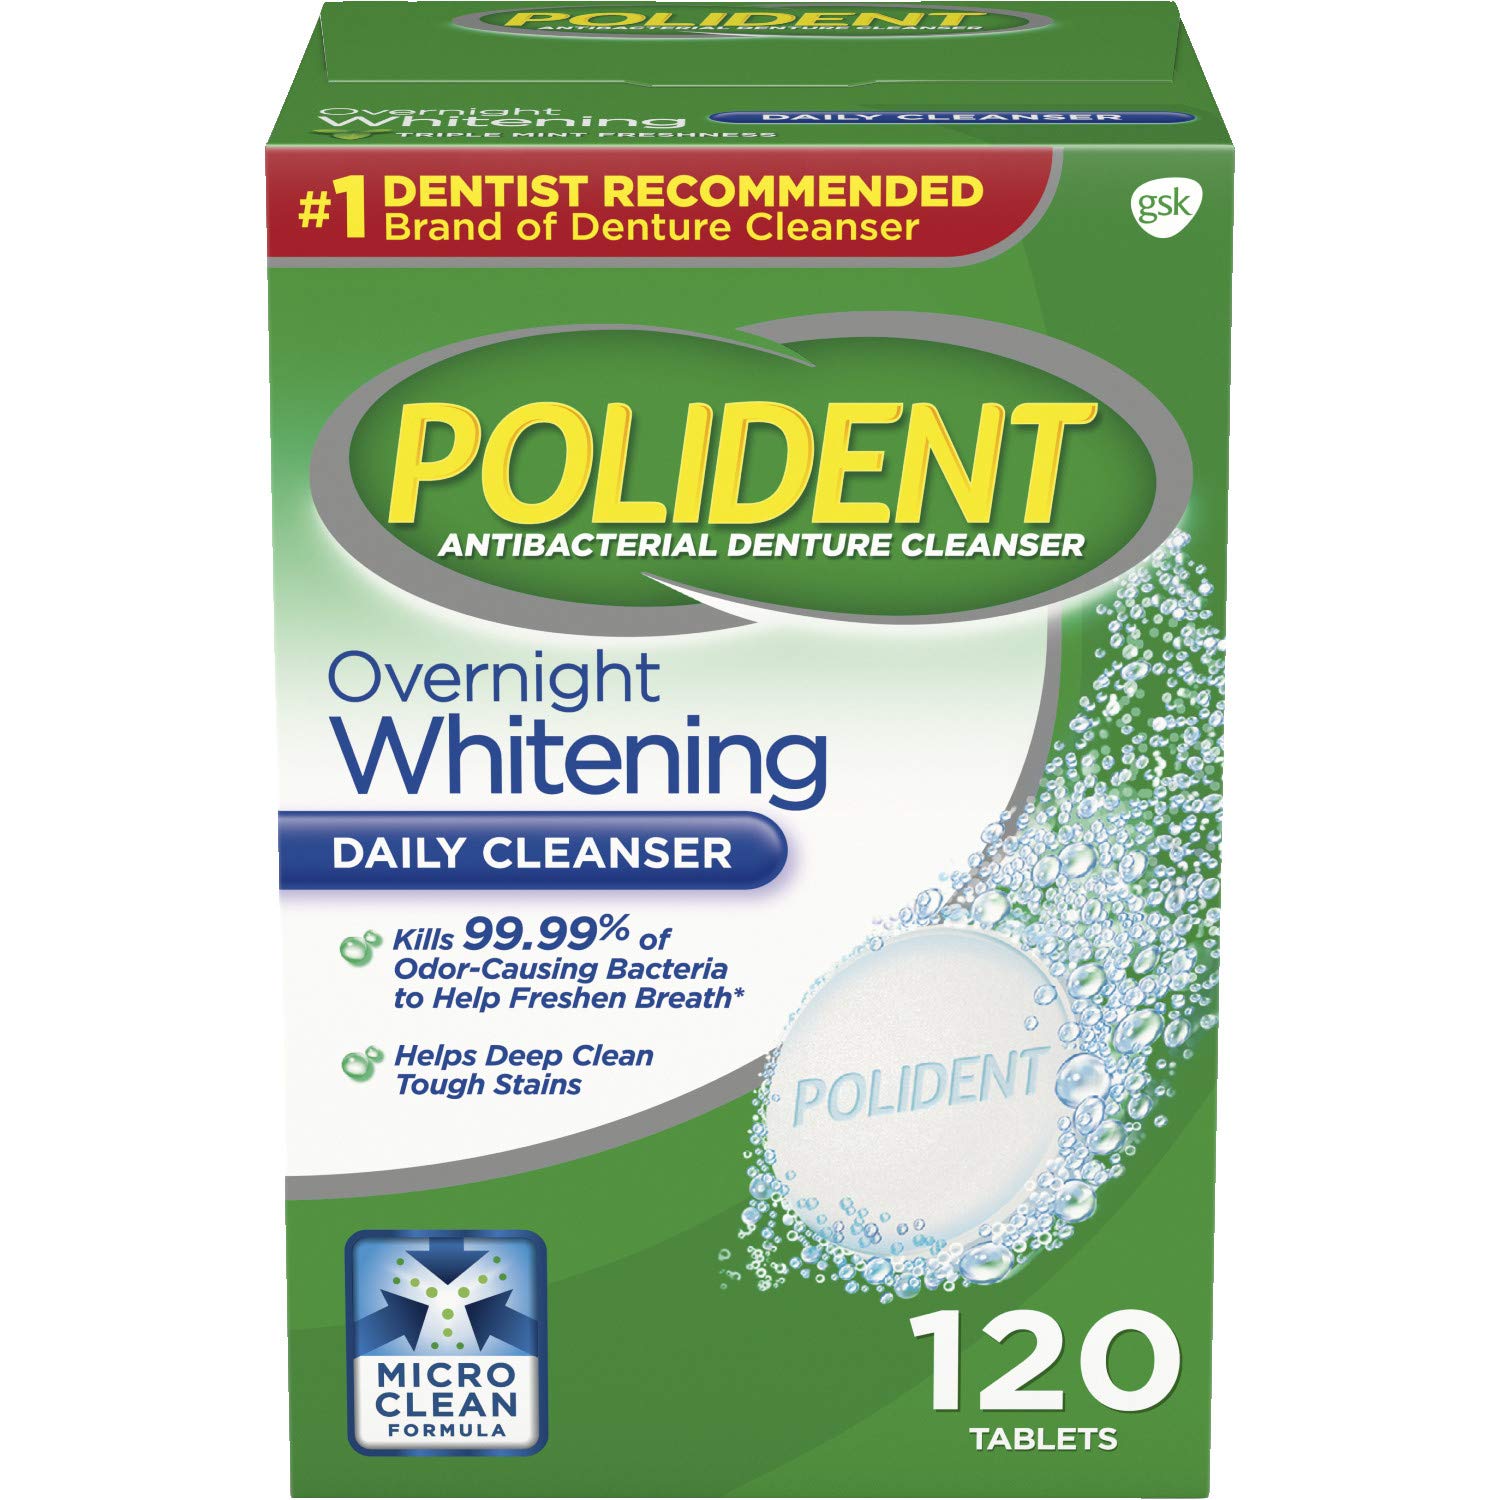 Polident Overnight Whitening, Antibacterial Denture Cleanser, Triple Mint Freshness 120 ea (Pack of 5)